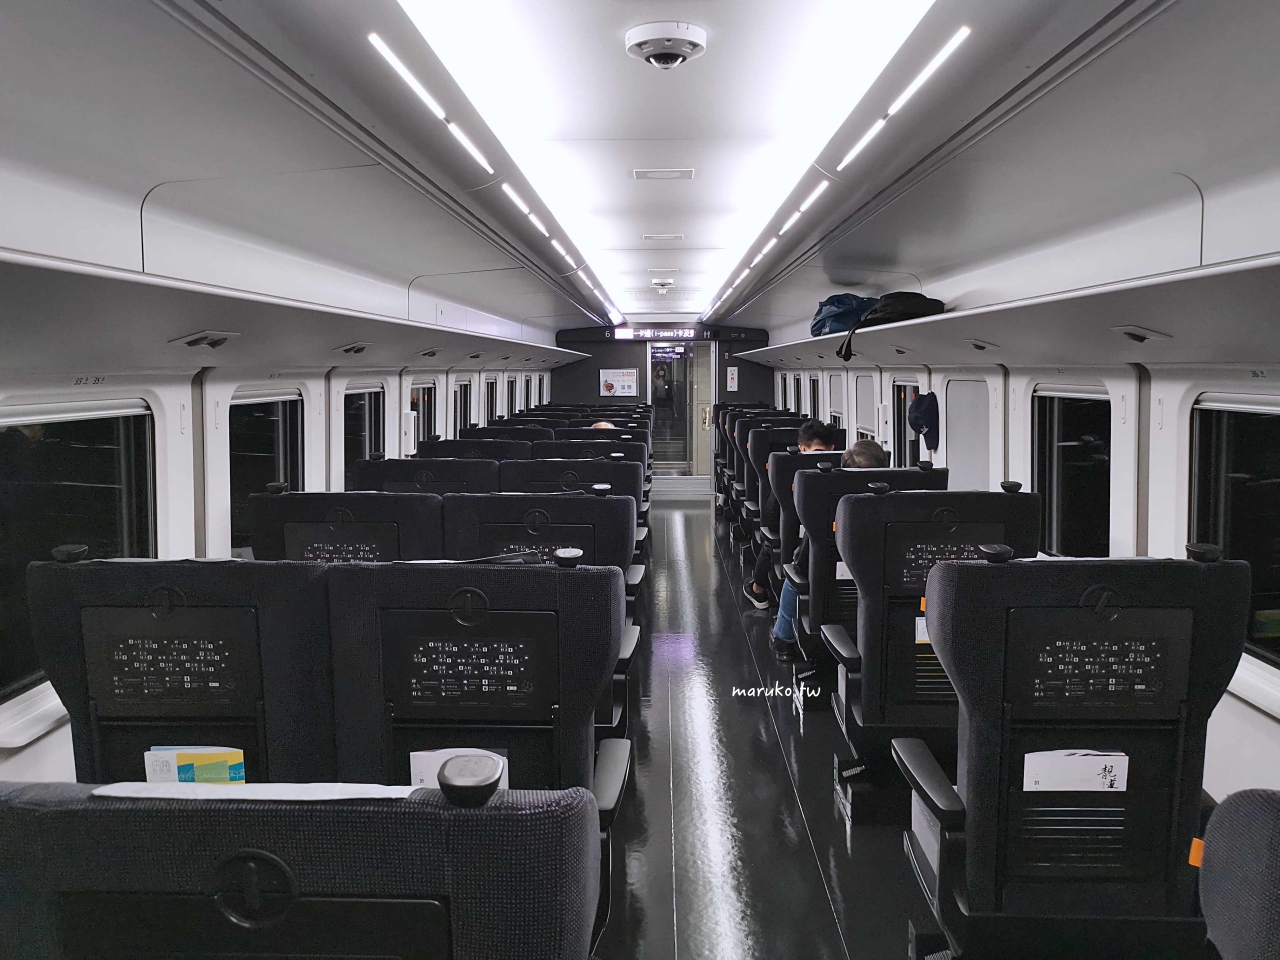 【台鐵】EMU3000型騰雲座艙 一次看懂自強號商務艙，車上限定餐點這樣訂才吃的到！ @Maruko與美食有個約會